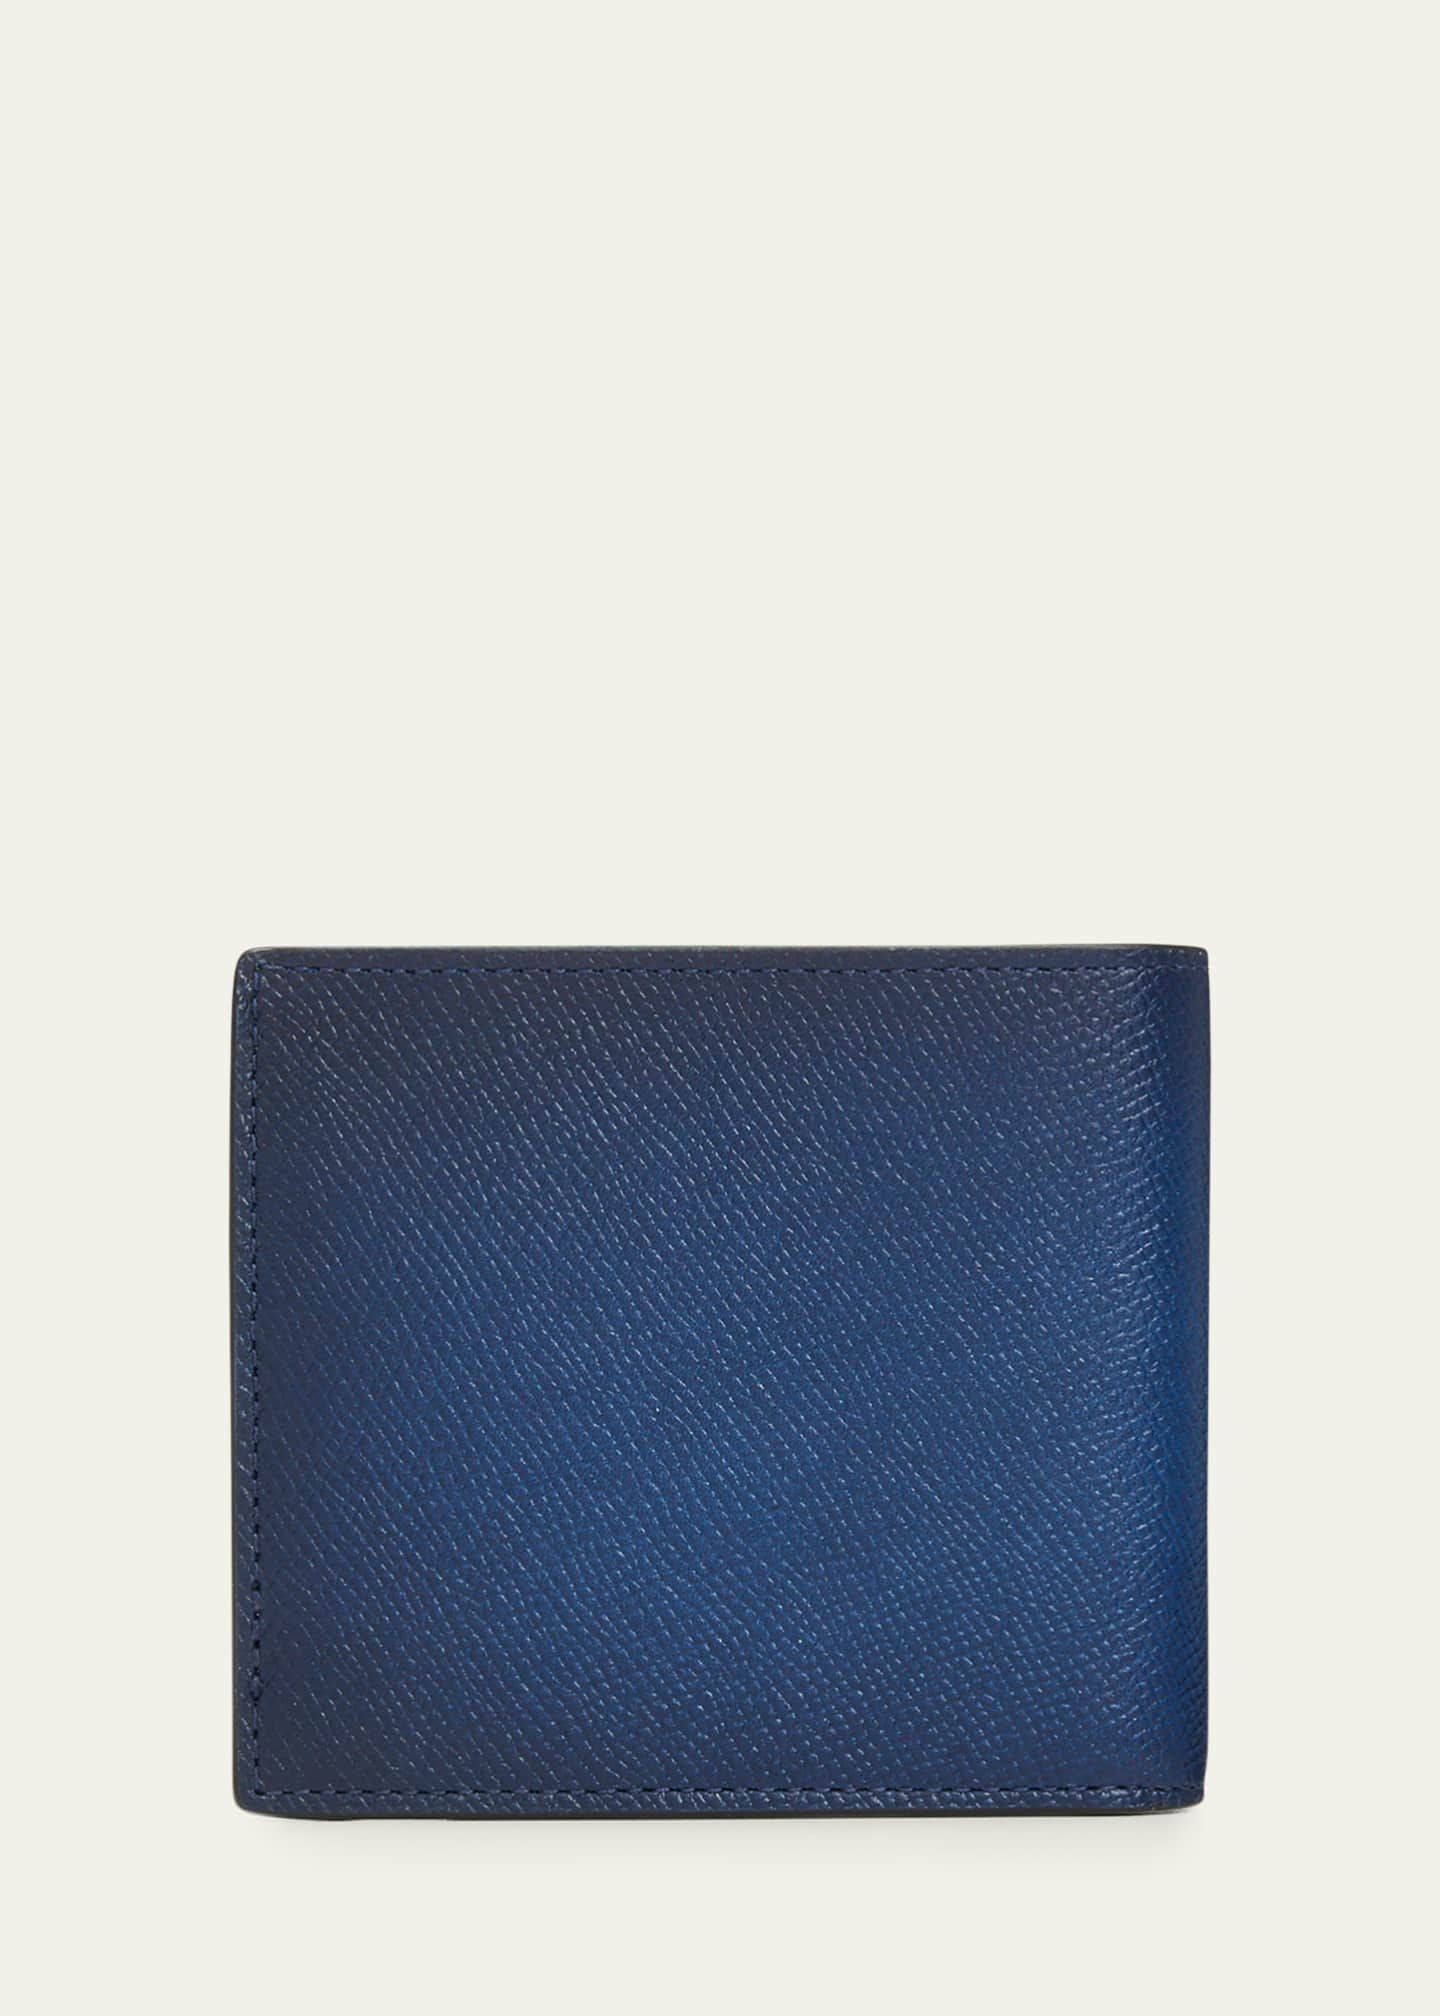 lv blue wallet mens